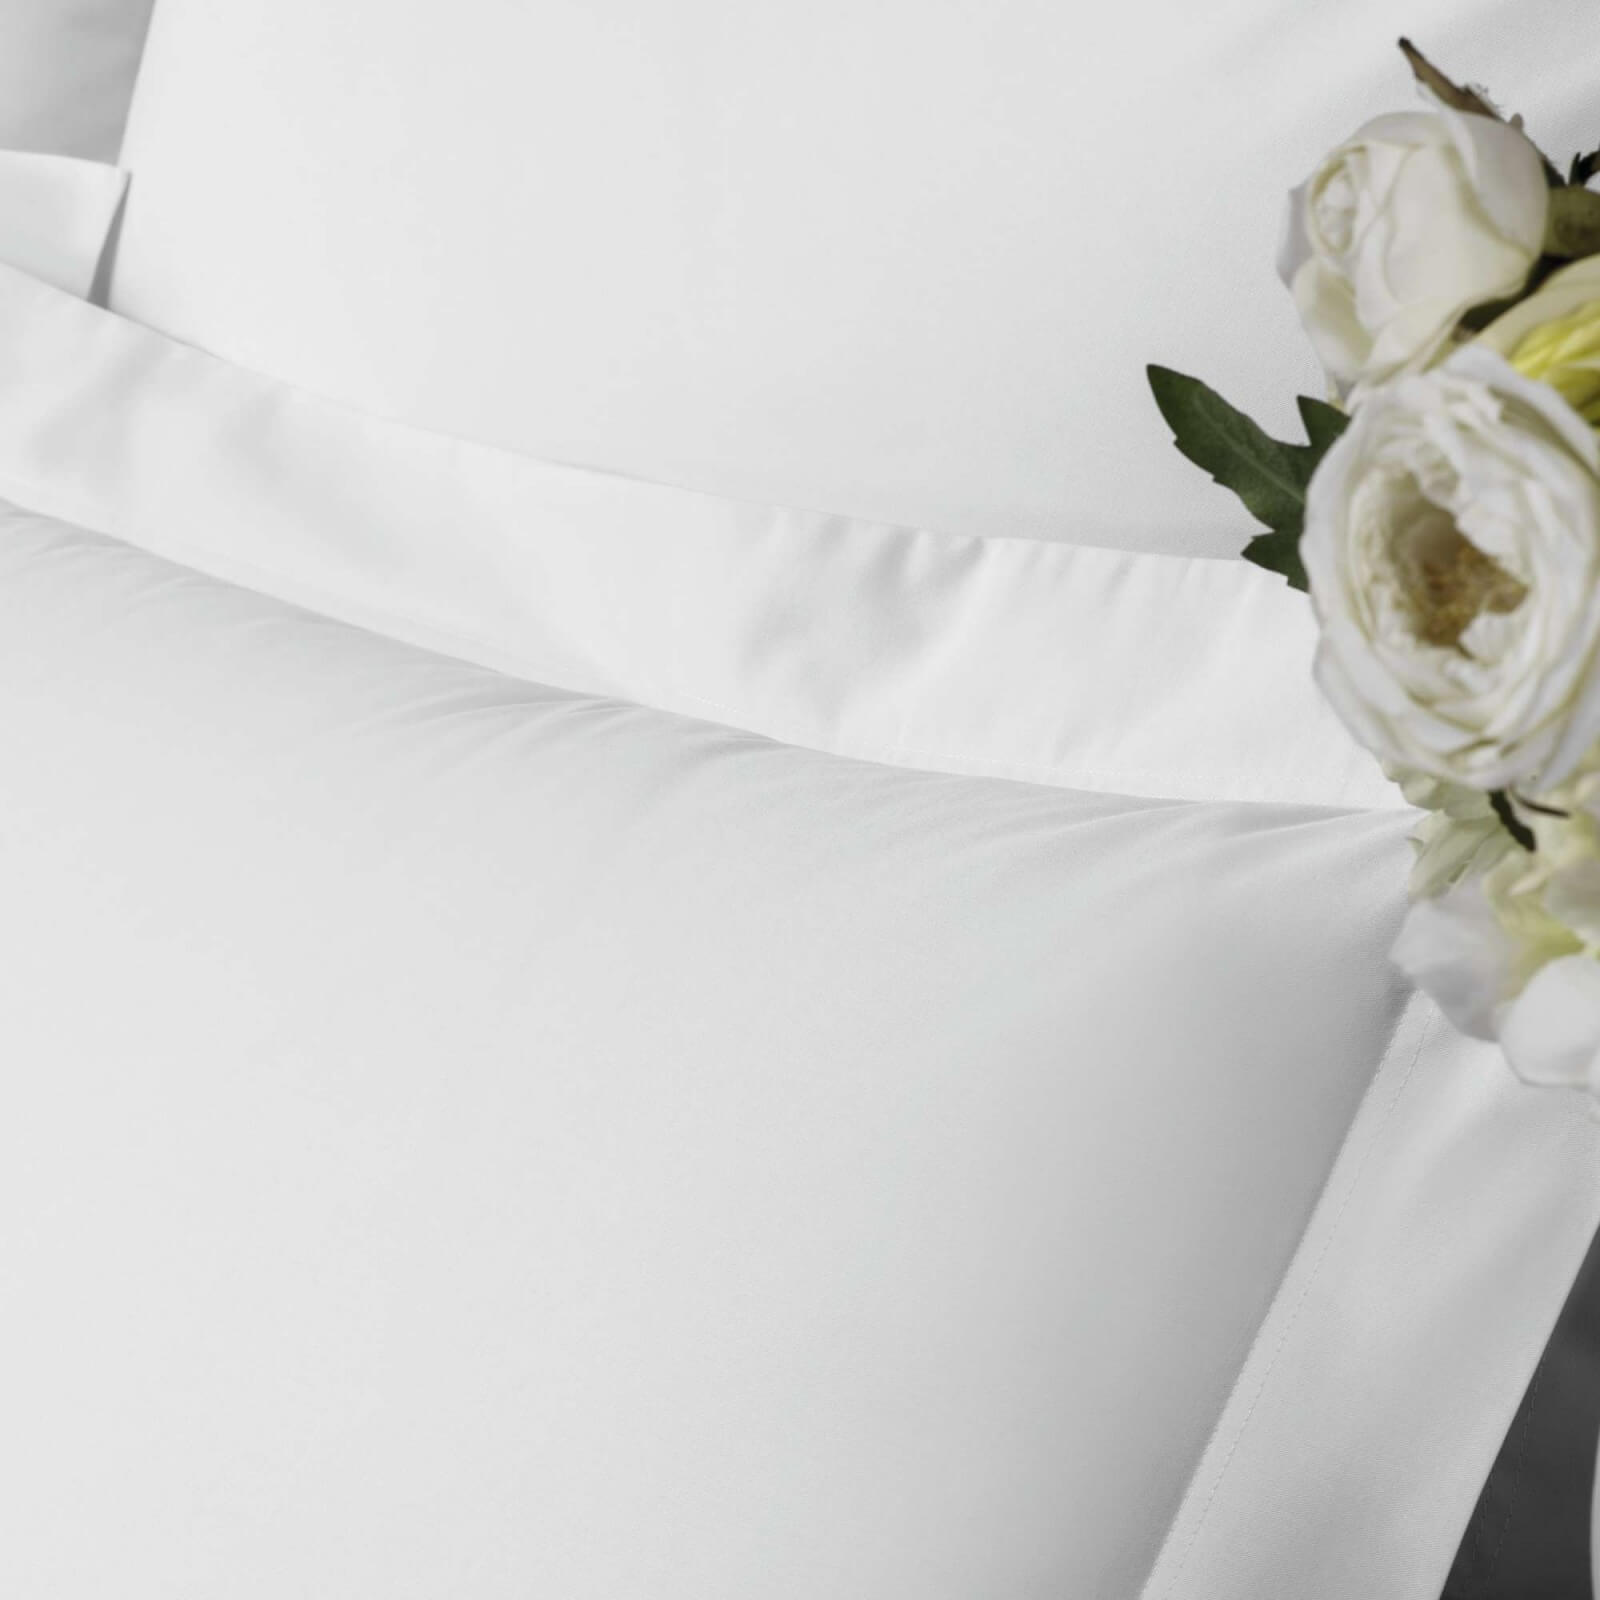 Однотонное постельное белье Elegance White ☞ Размер пододеяльника: 200 x 220 см ☞ Размер простыни: 250 x 290 см ☞ Размер наволочек: 50 x 70 см (2 шт.)